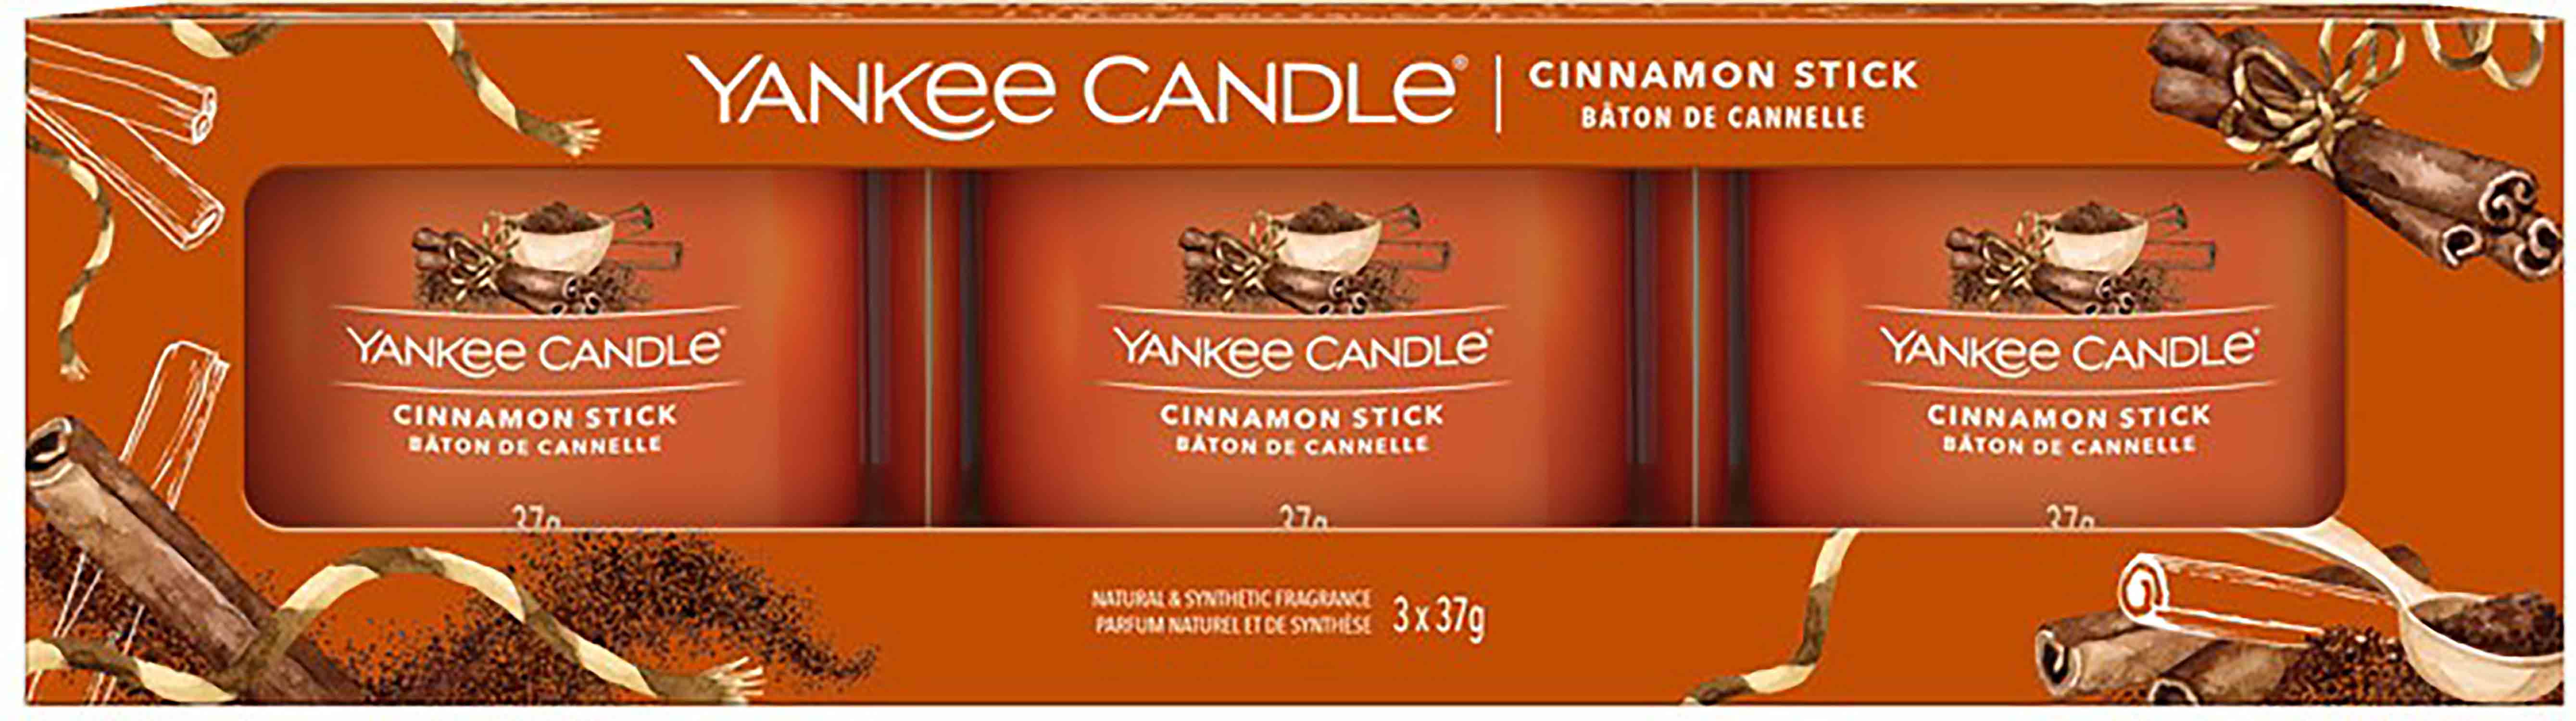 Yankee Candle Cinnamon Stick sada votivních svíček